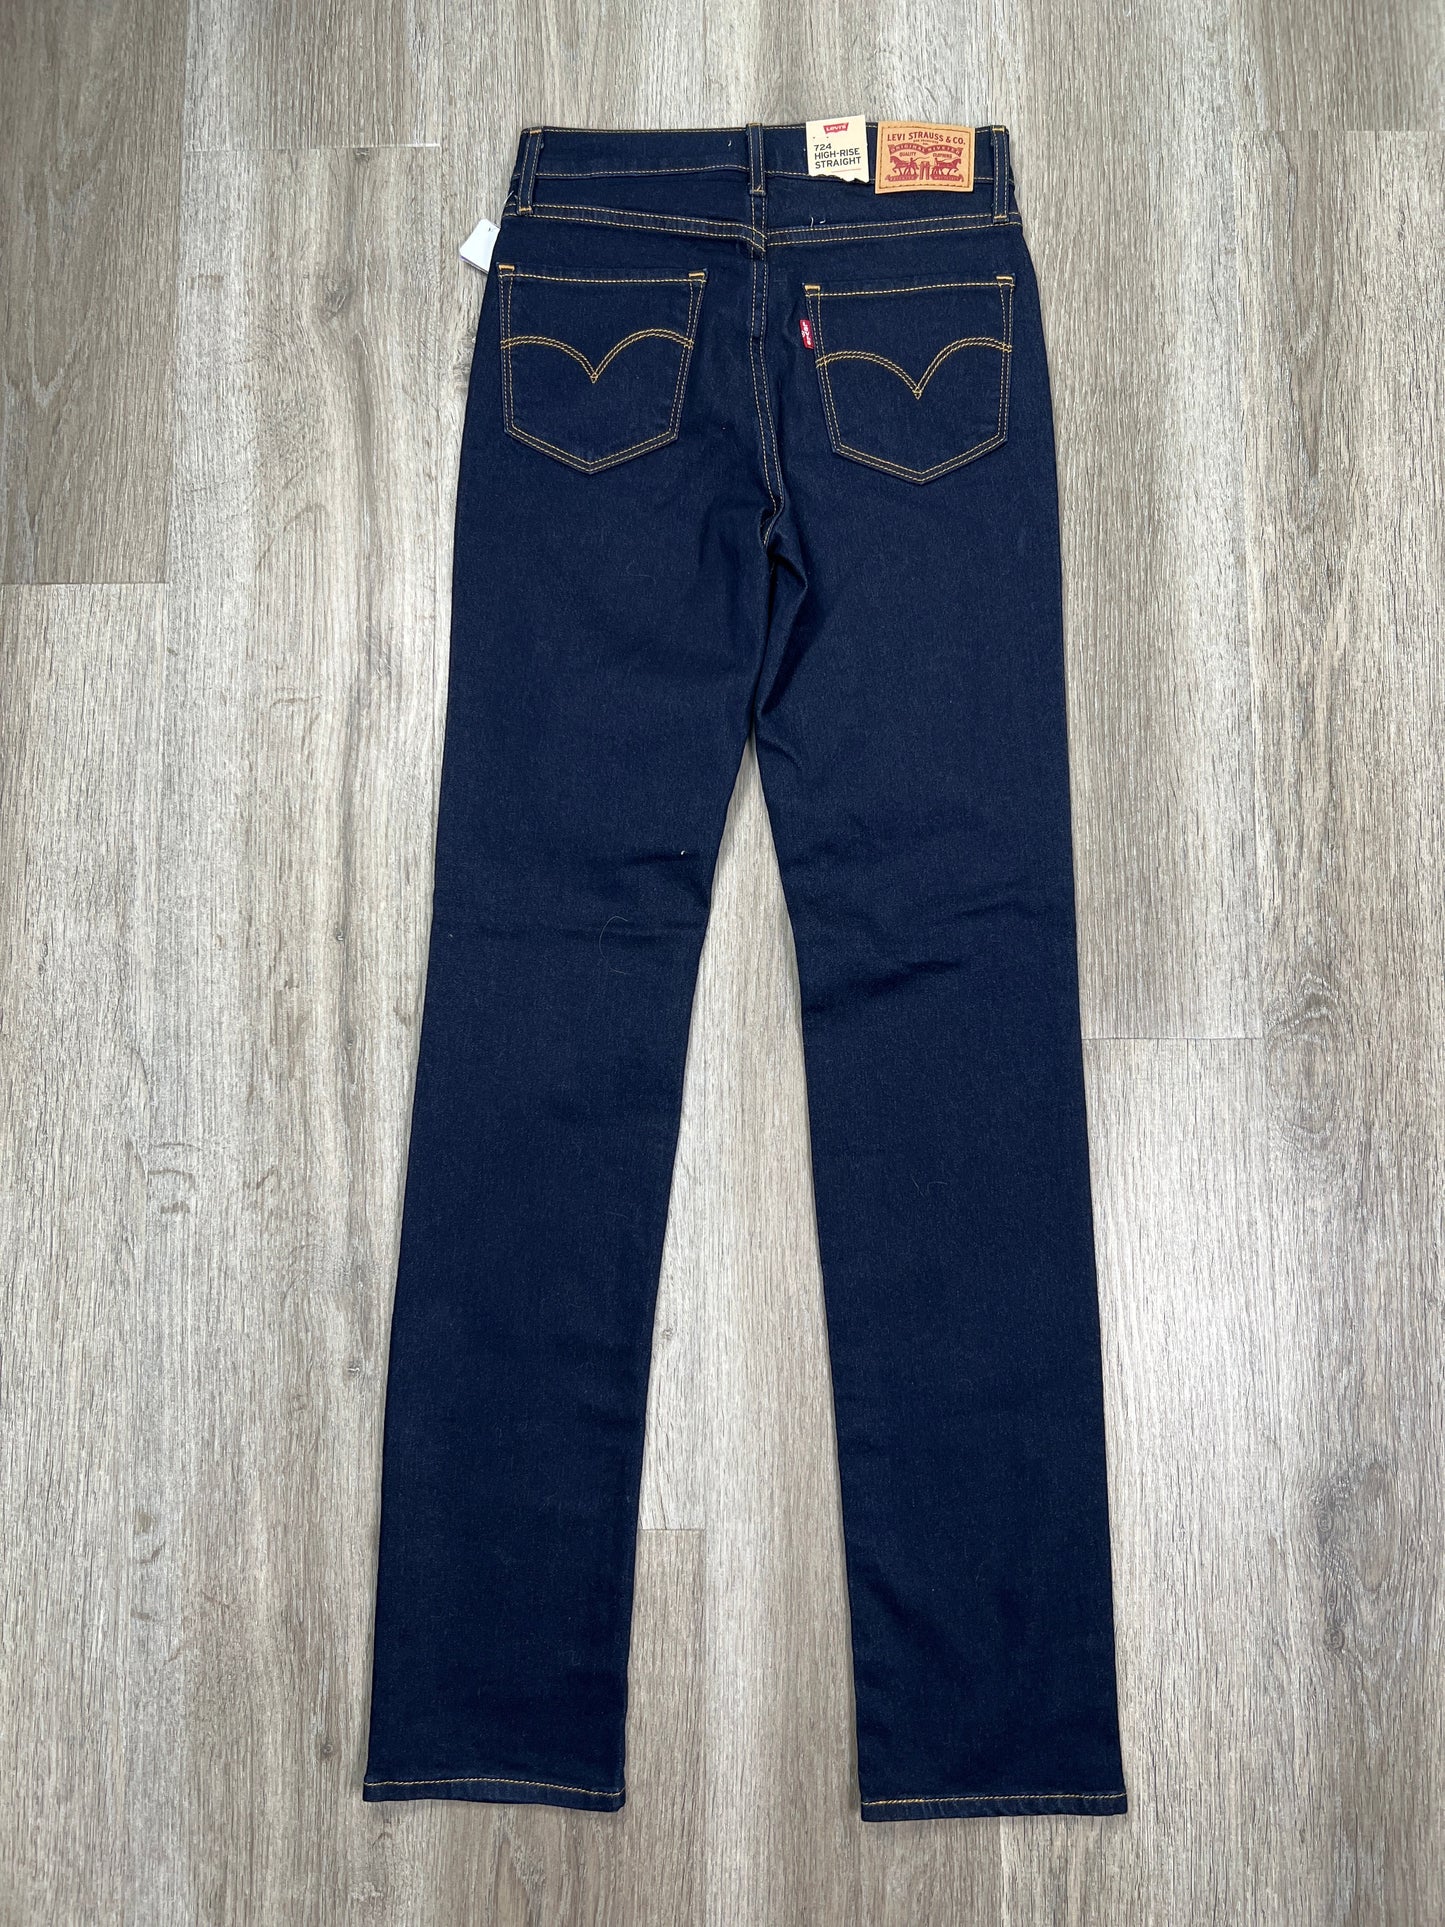 Blue Denim Jeans Straight Levis, Size 0